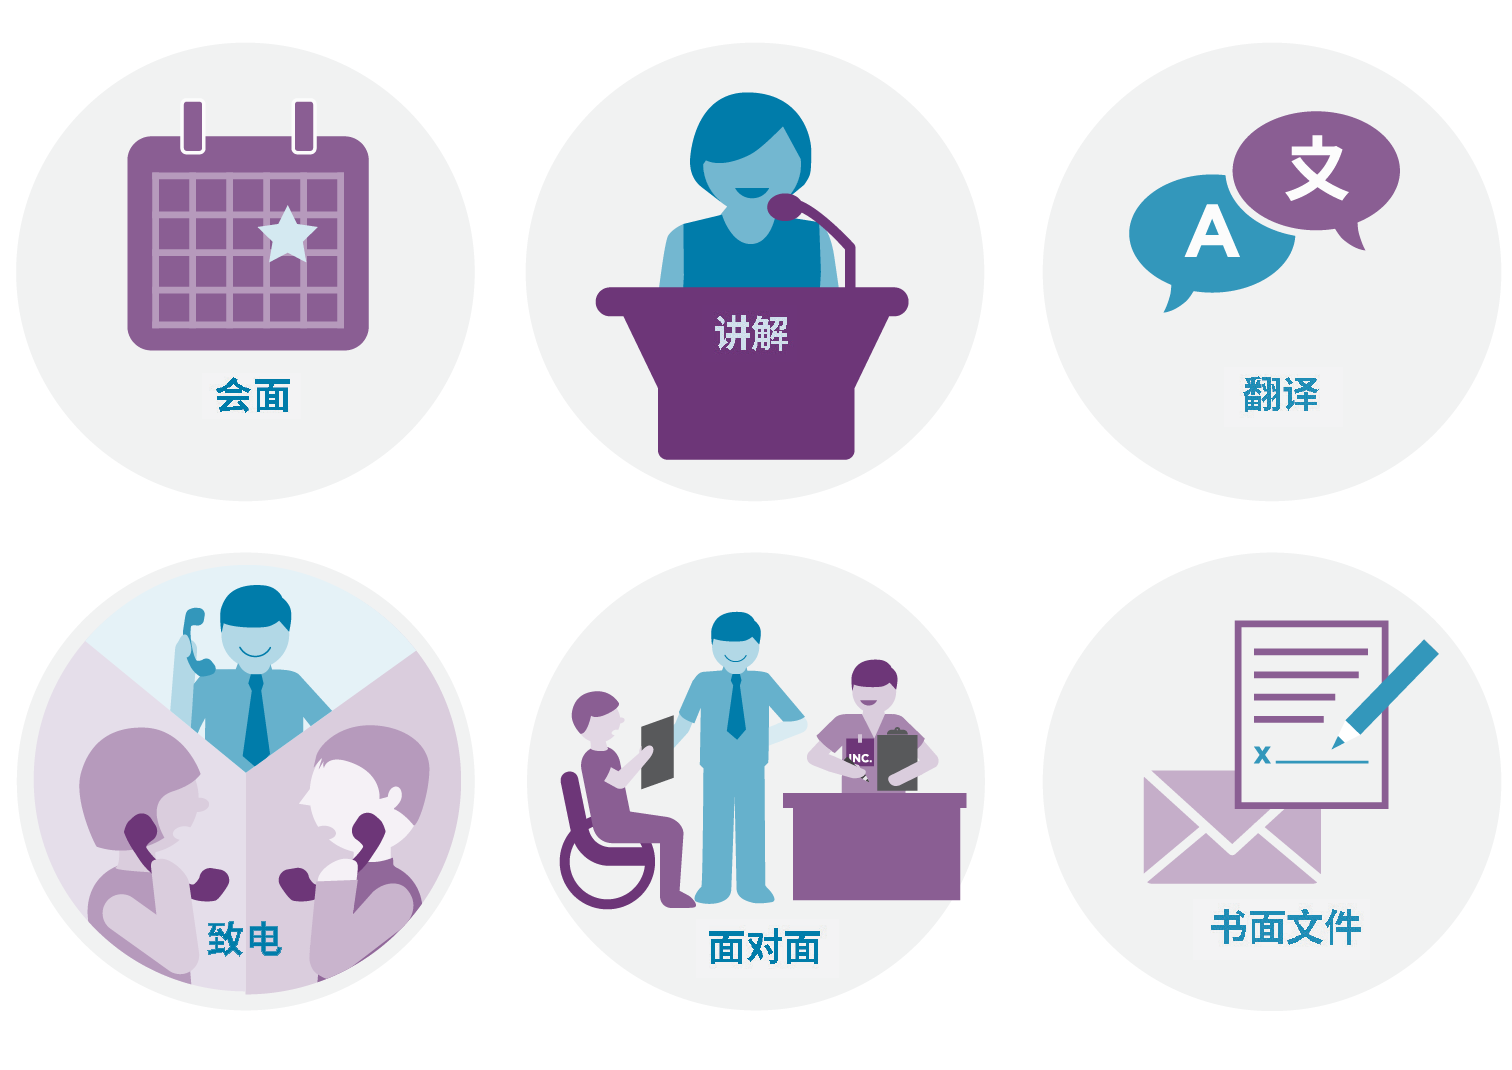 插图，展示 ICAN 提供协助的不同方式：包括通过电话、书面、专人协助、当面协助、提供说明及翻译。